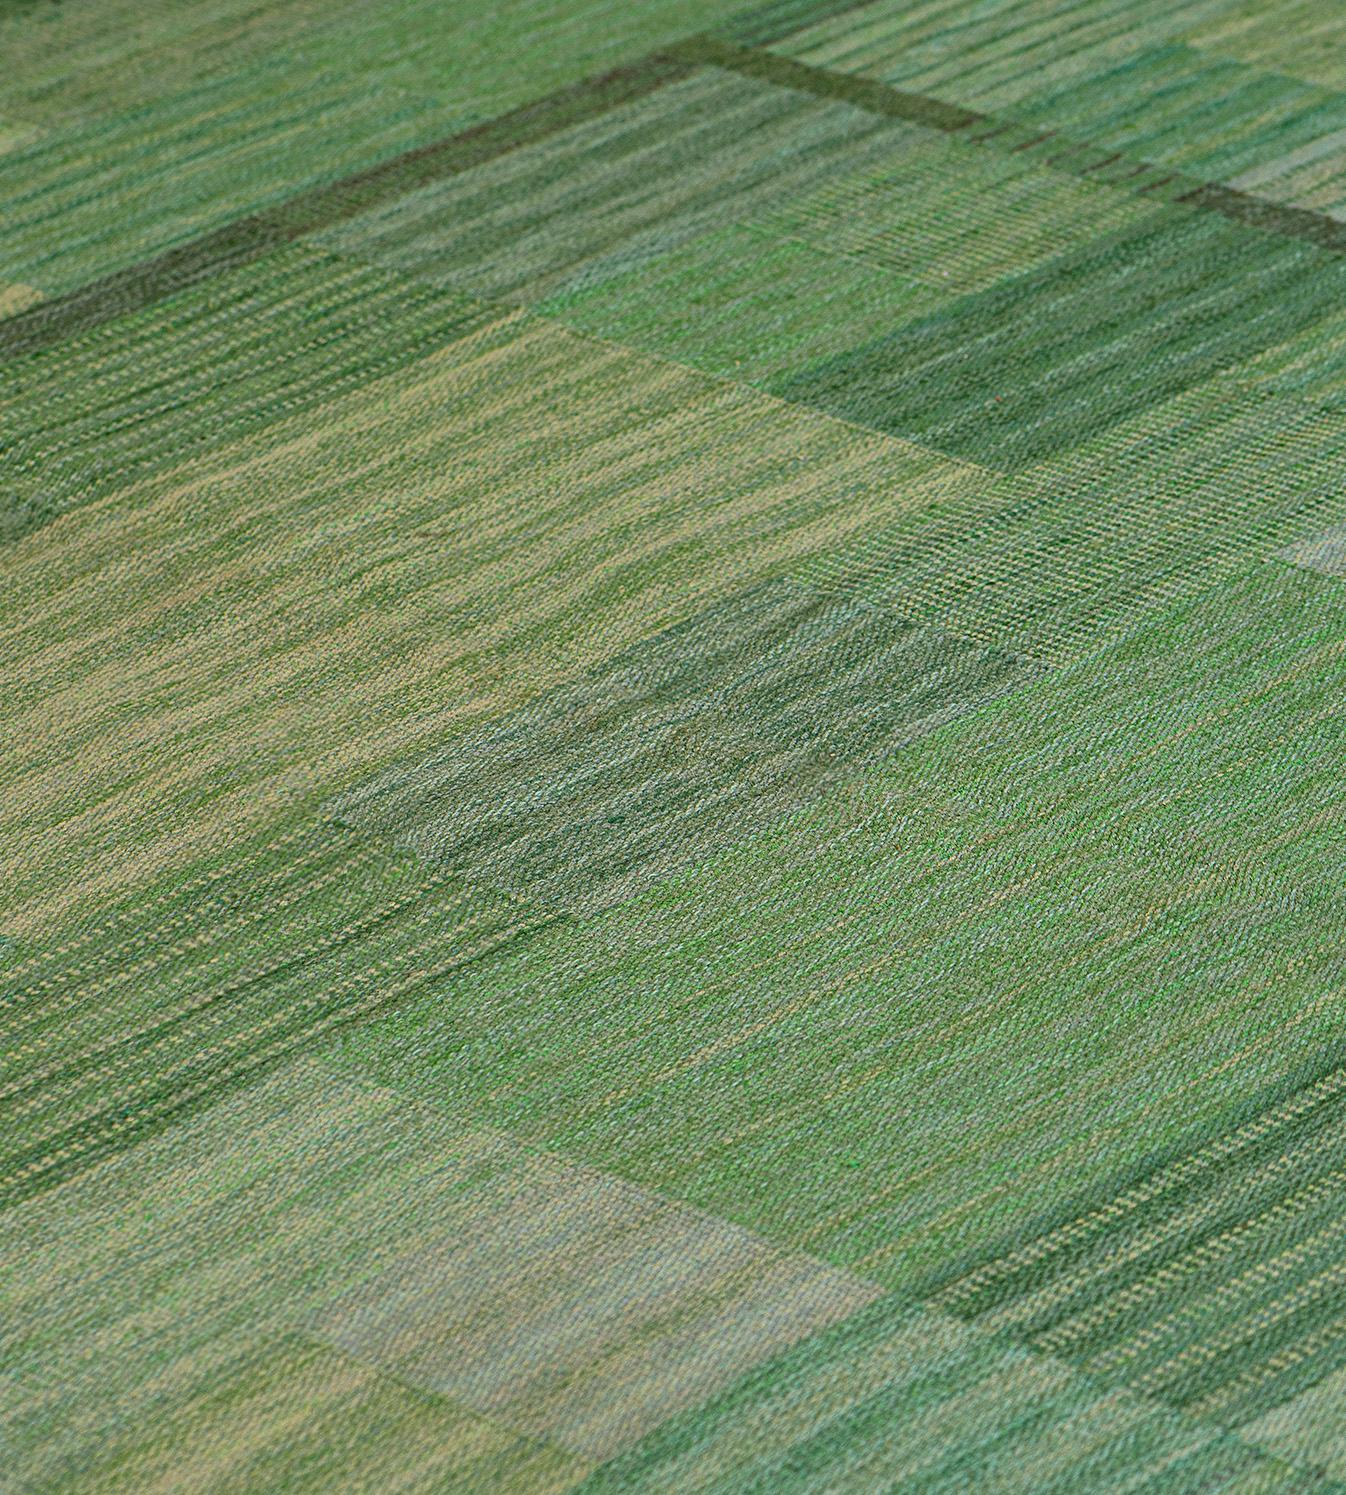 Ce tapis déco suédois traditionnel tissé à la main présente un champ global de larges carreaux alternant des rangées vertes et vertes claires.

Signé par la tisseuse : AB MMF Marianne Richter pour Marta Maas Fjetterstrom Studio.